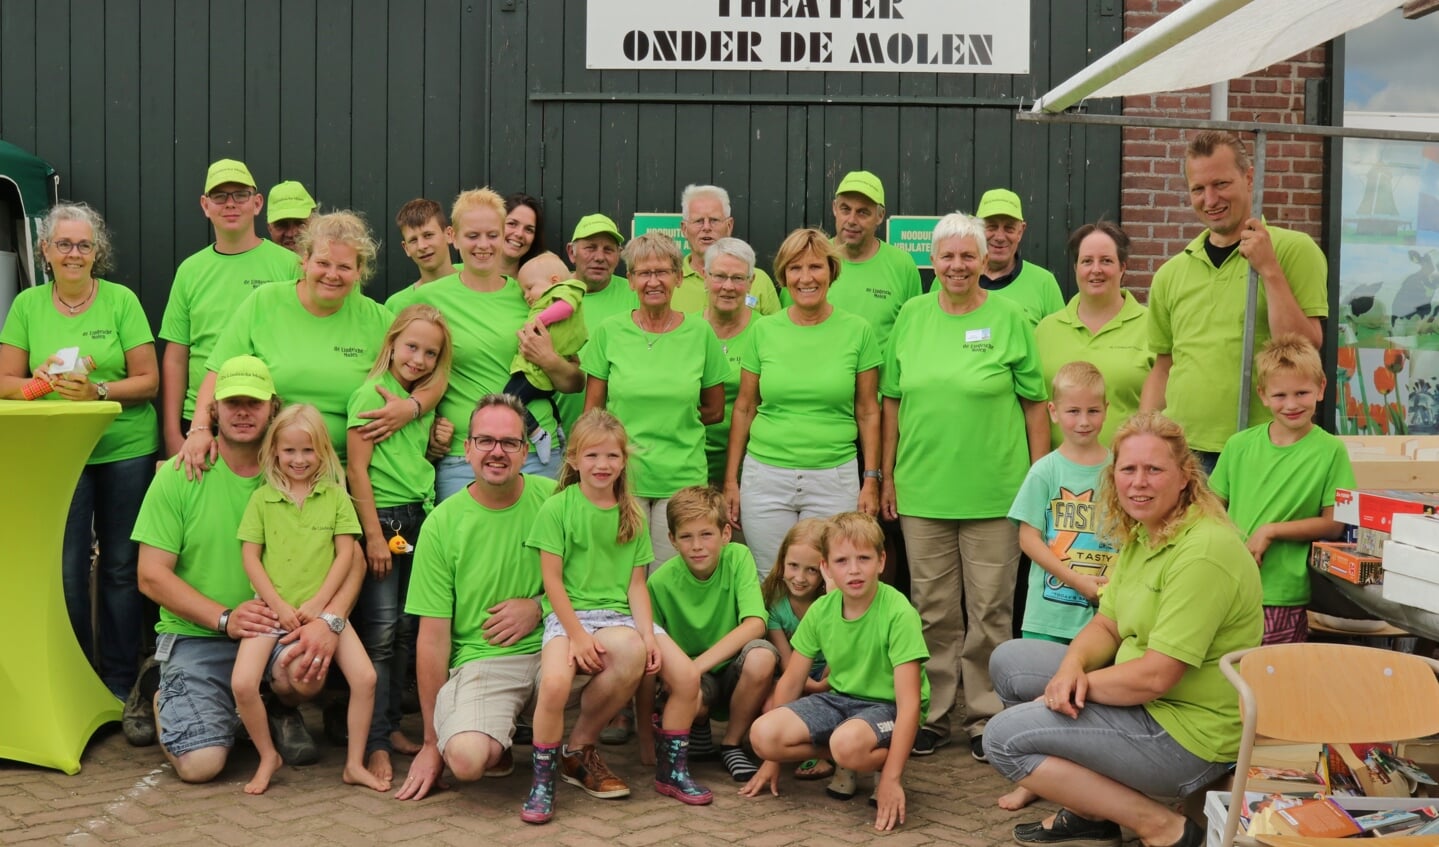 Met de ruim twintig vrijwilligers werd terug gekeken op een zeer geslaagde dag. Foto: Achterhoekfoto.nl/Marja Sangers-Bijl